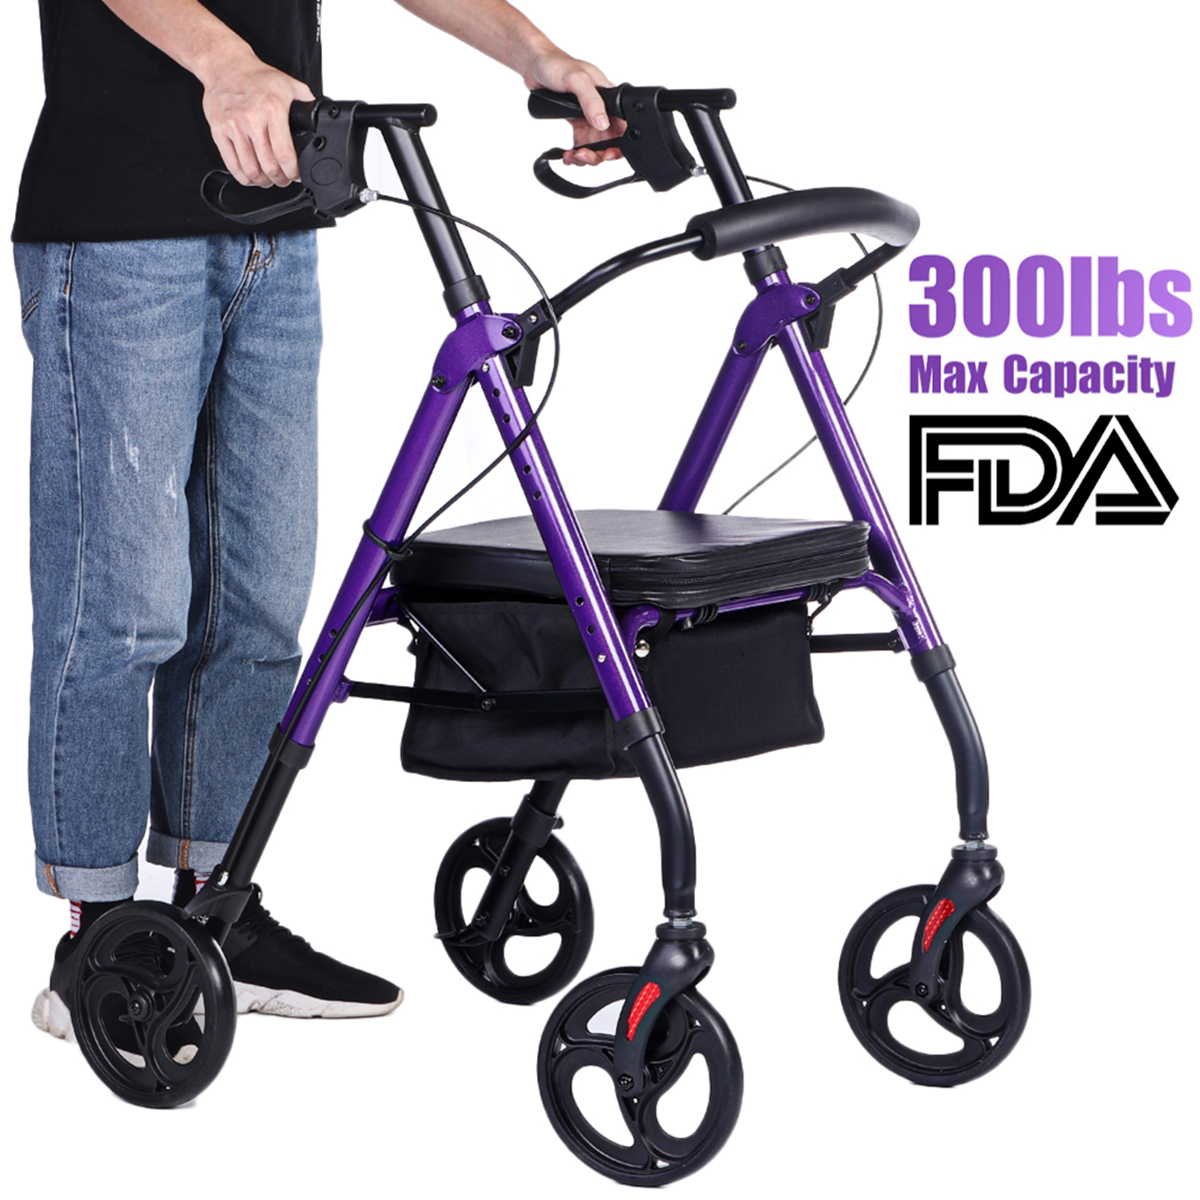 4-Wheel-Seat-Rolling-Walker-Chair-Rollator-Foldable-Adjustable-Elderly-Aid-Basket-Backrest-1940430-6